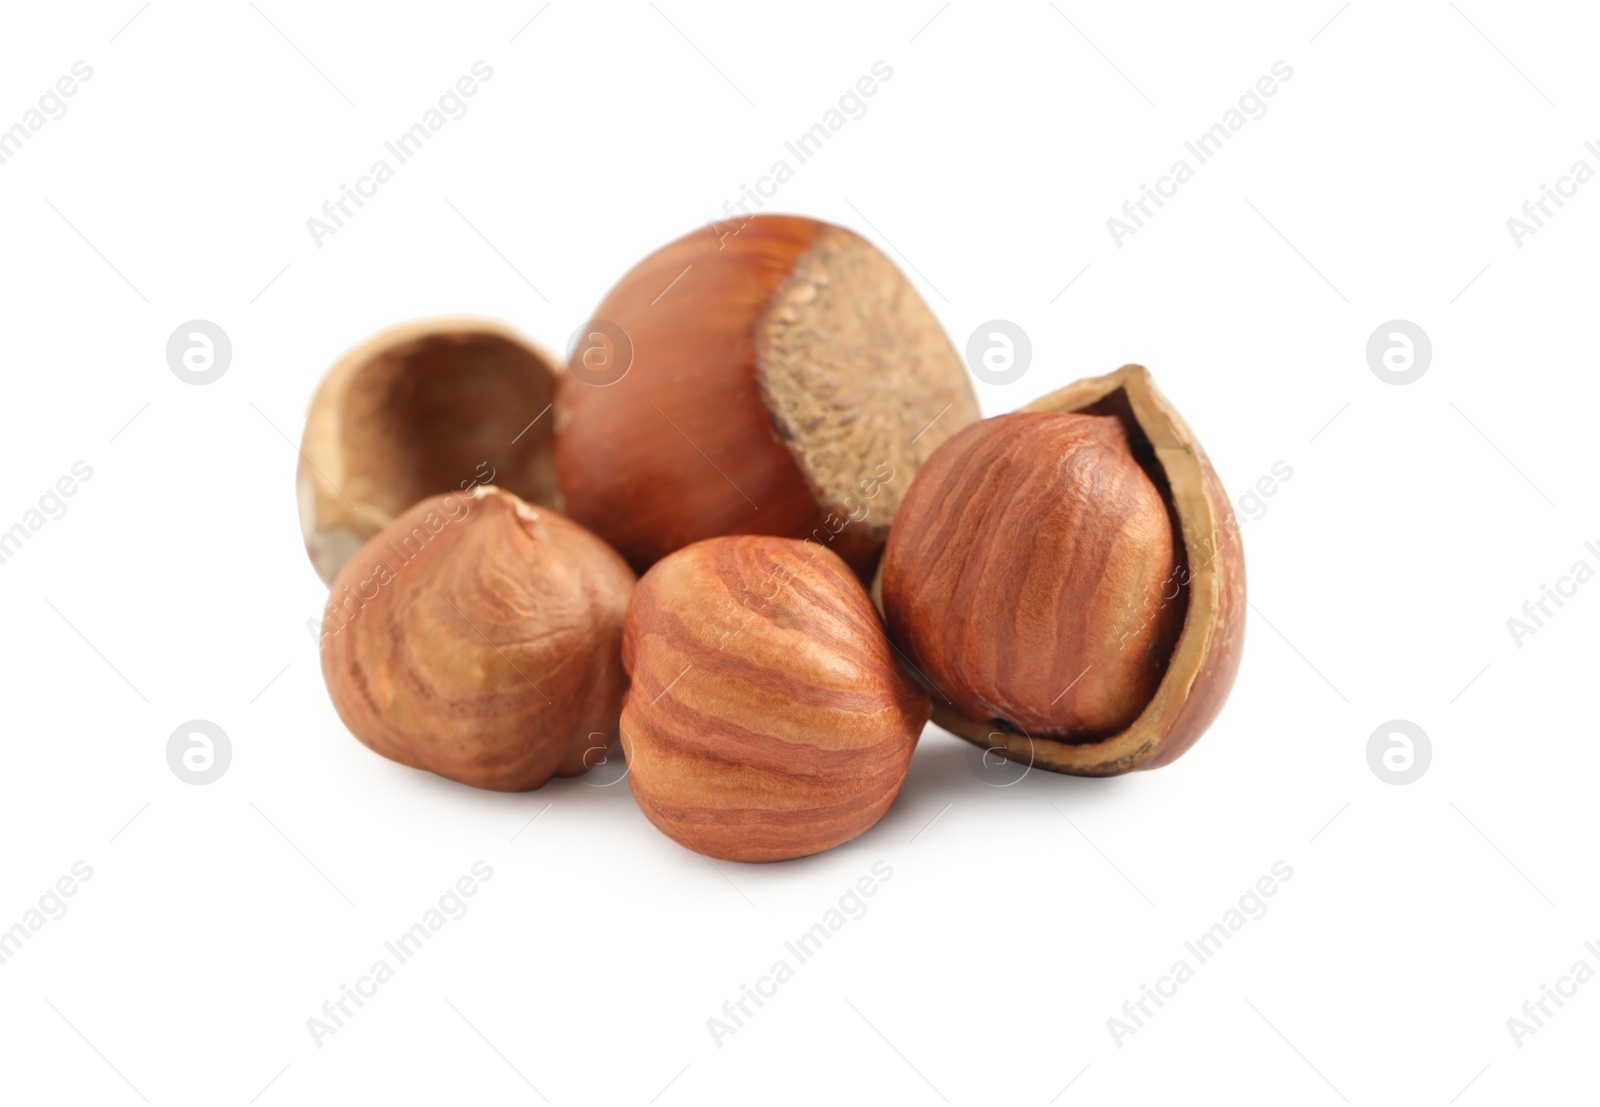 Photo of Tasty organic hazelnuts on white background. Healthy snack